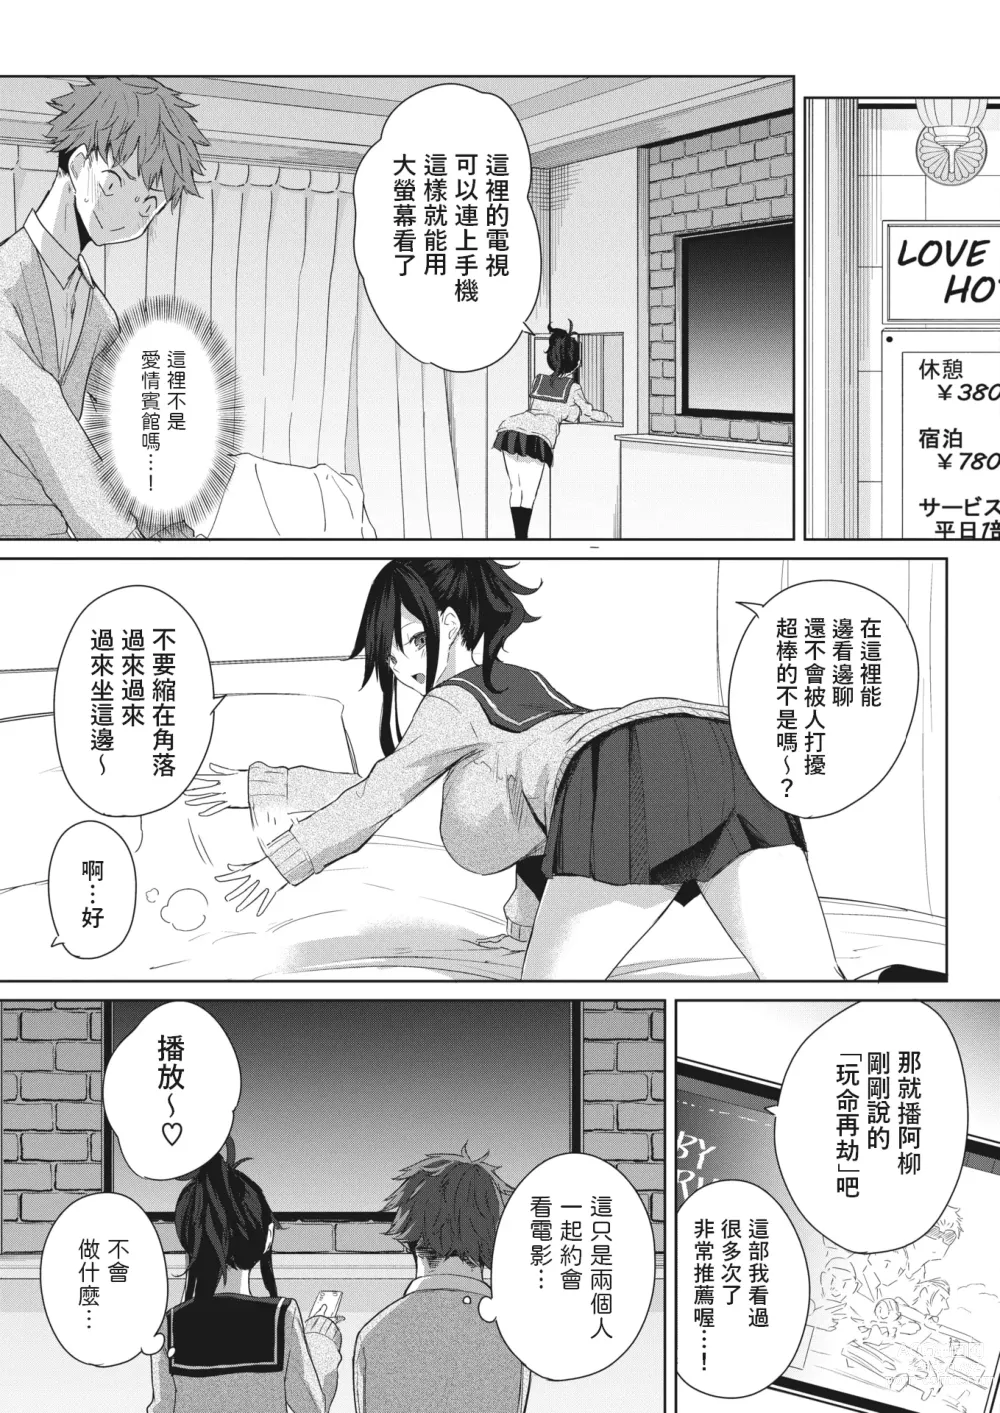 Page 5 of manga Risou no Date